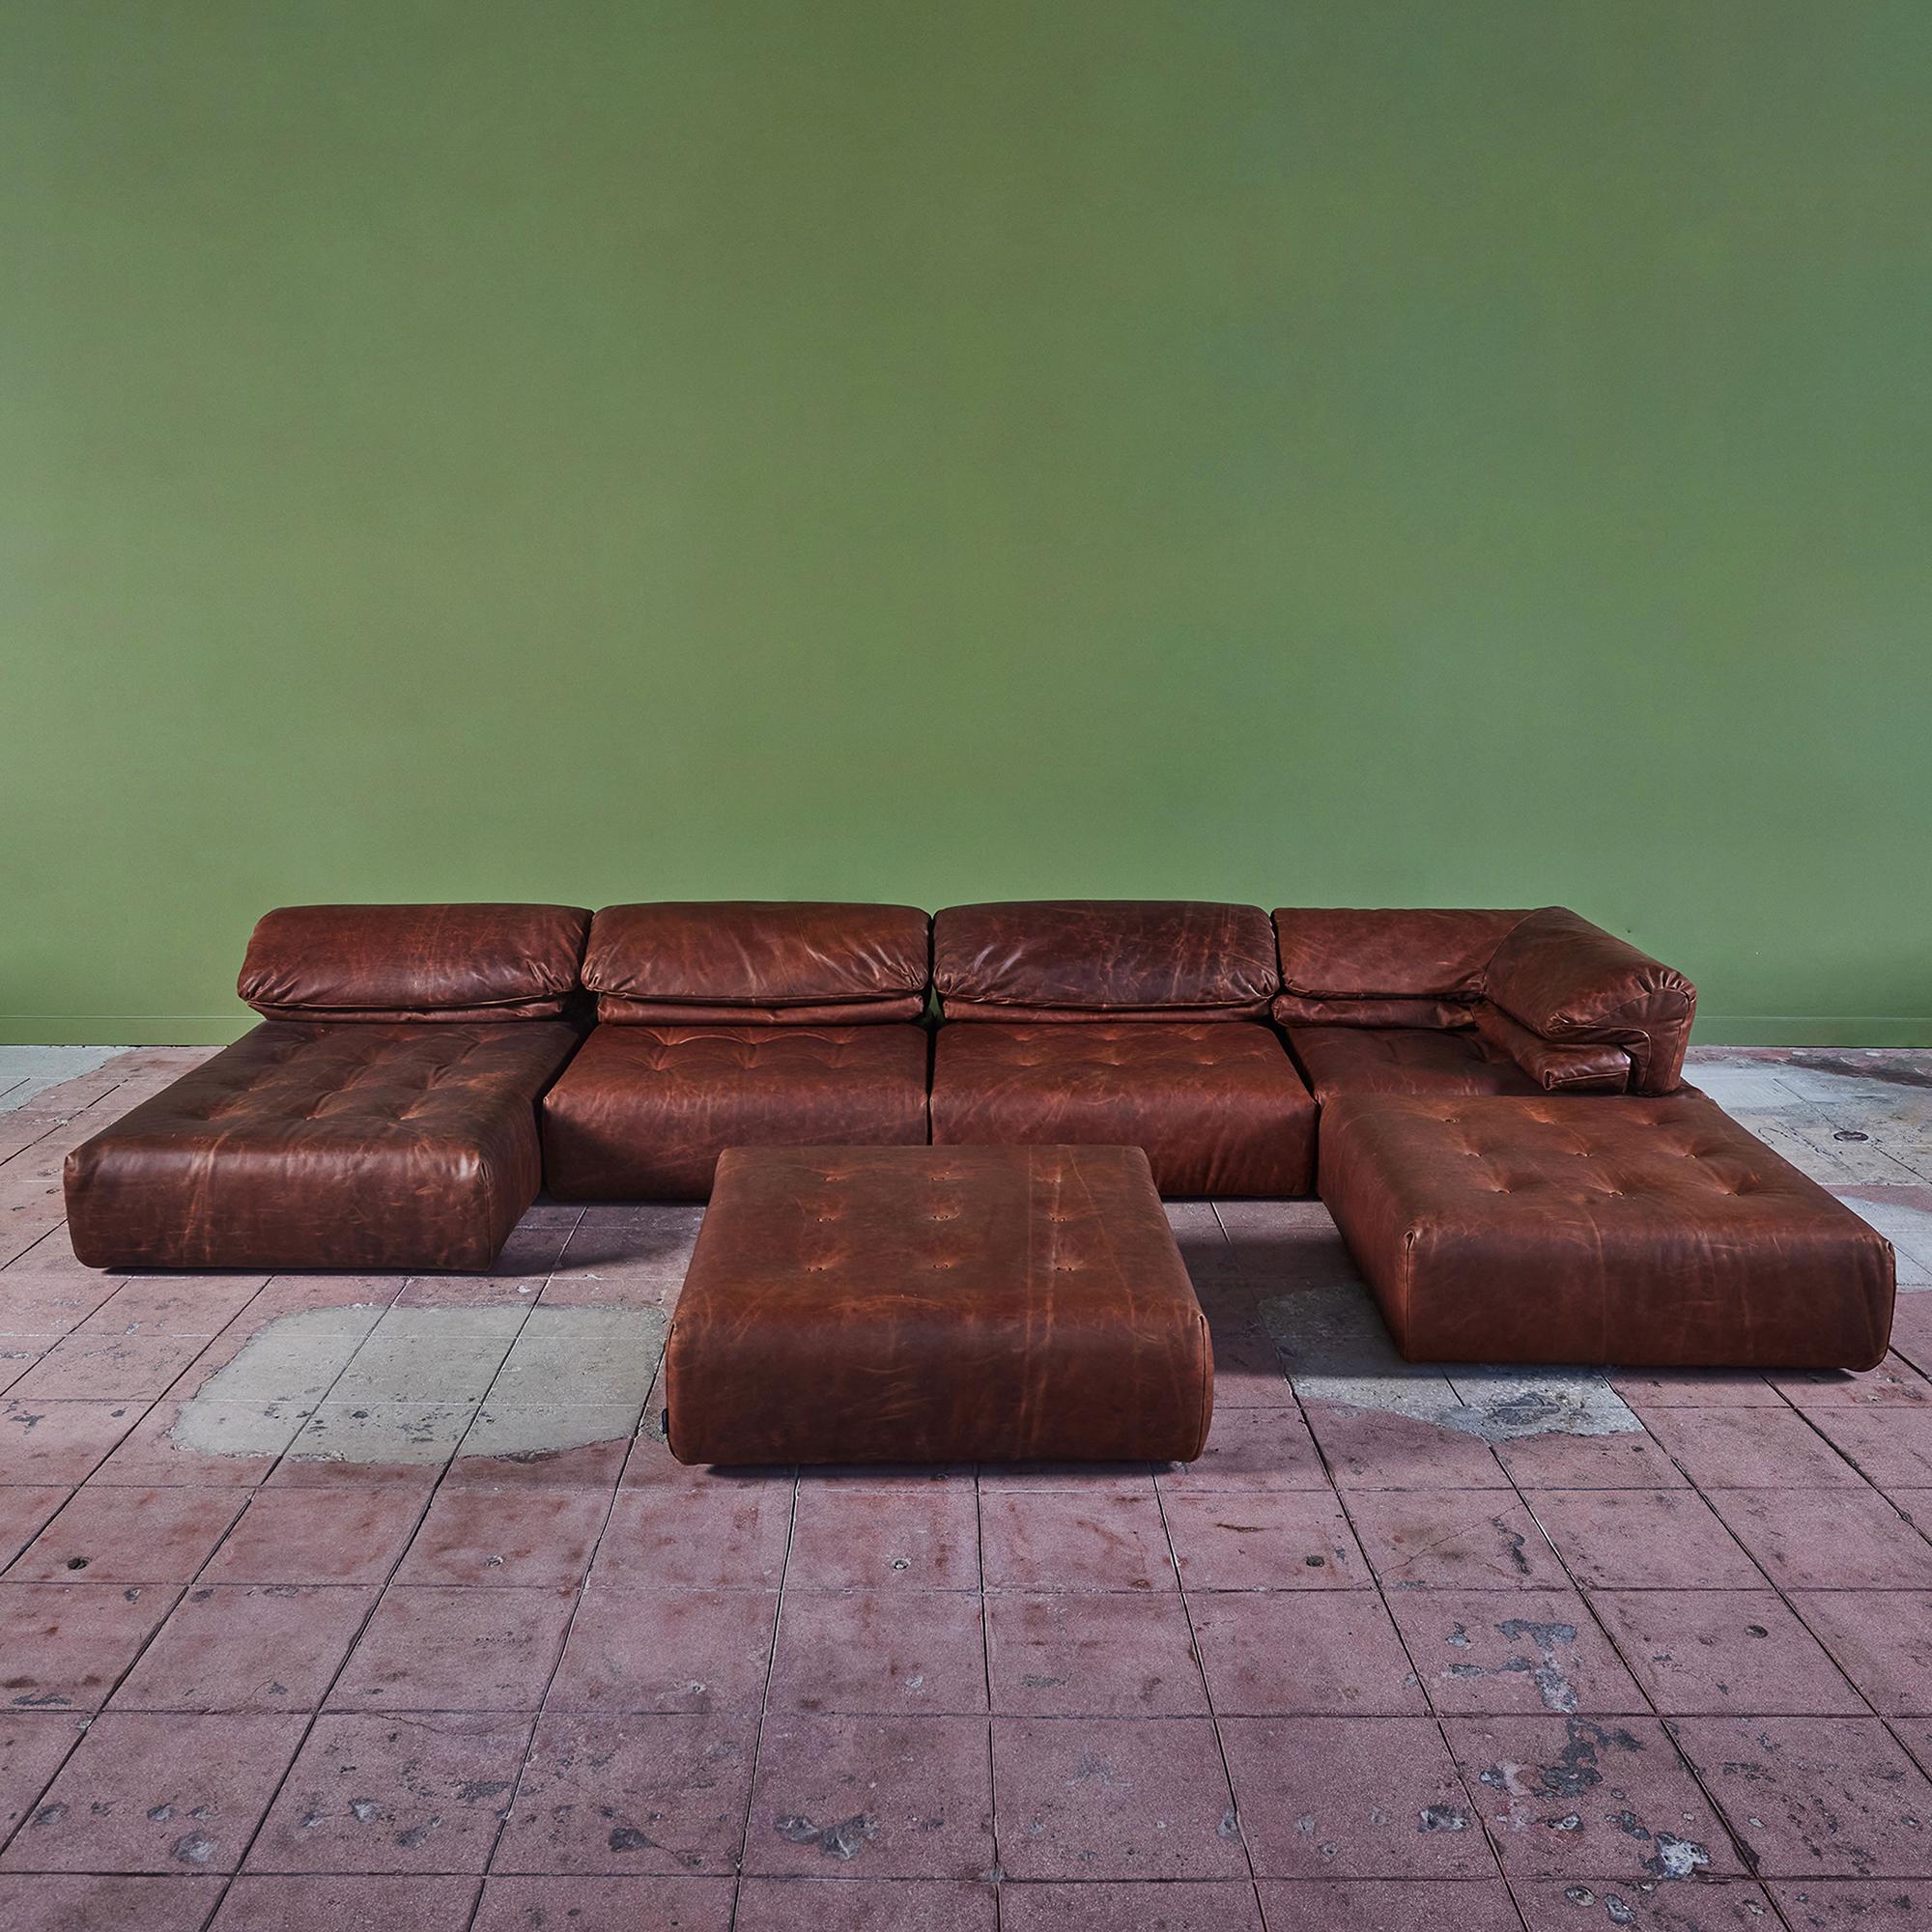 Canapé modulable en cuir brun Roche Bobois. Cet exemple, fabriqué en Italie, se compose de trois sièges avec dossier, d'une chaise longue et de deux ottomans permettant de créer plusieurs variantes d'assise. Le nouveau canapé est doté d'une assise